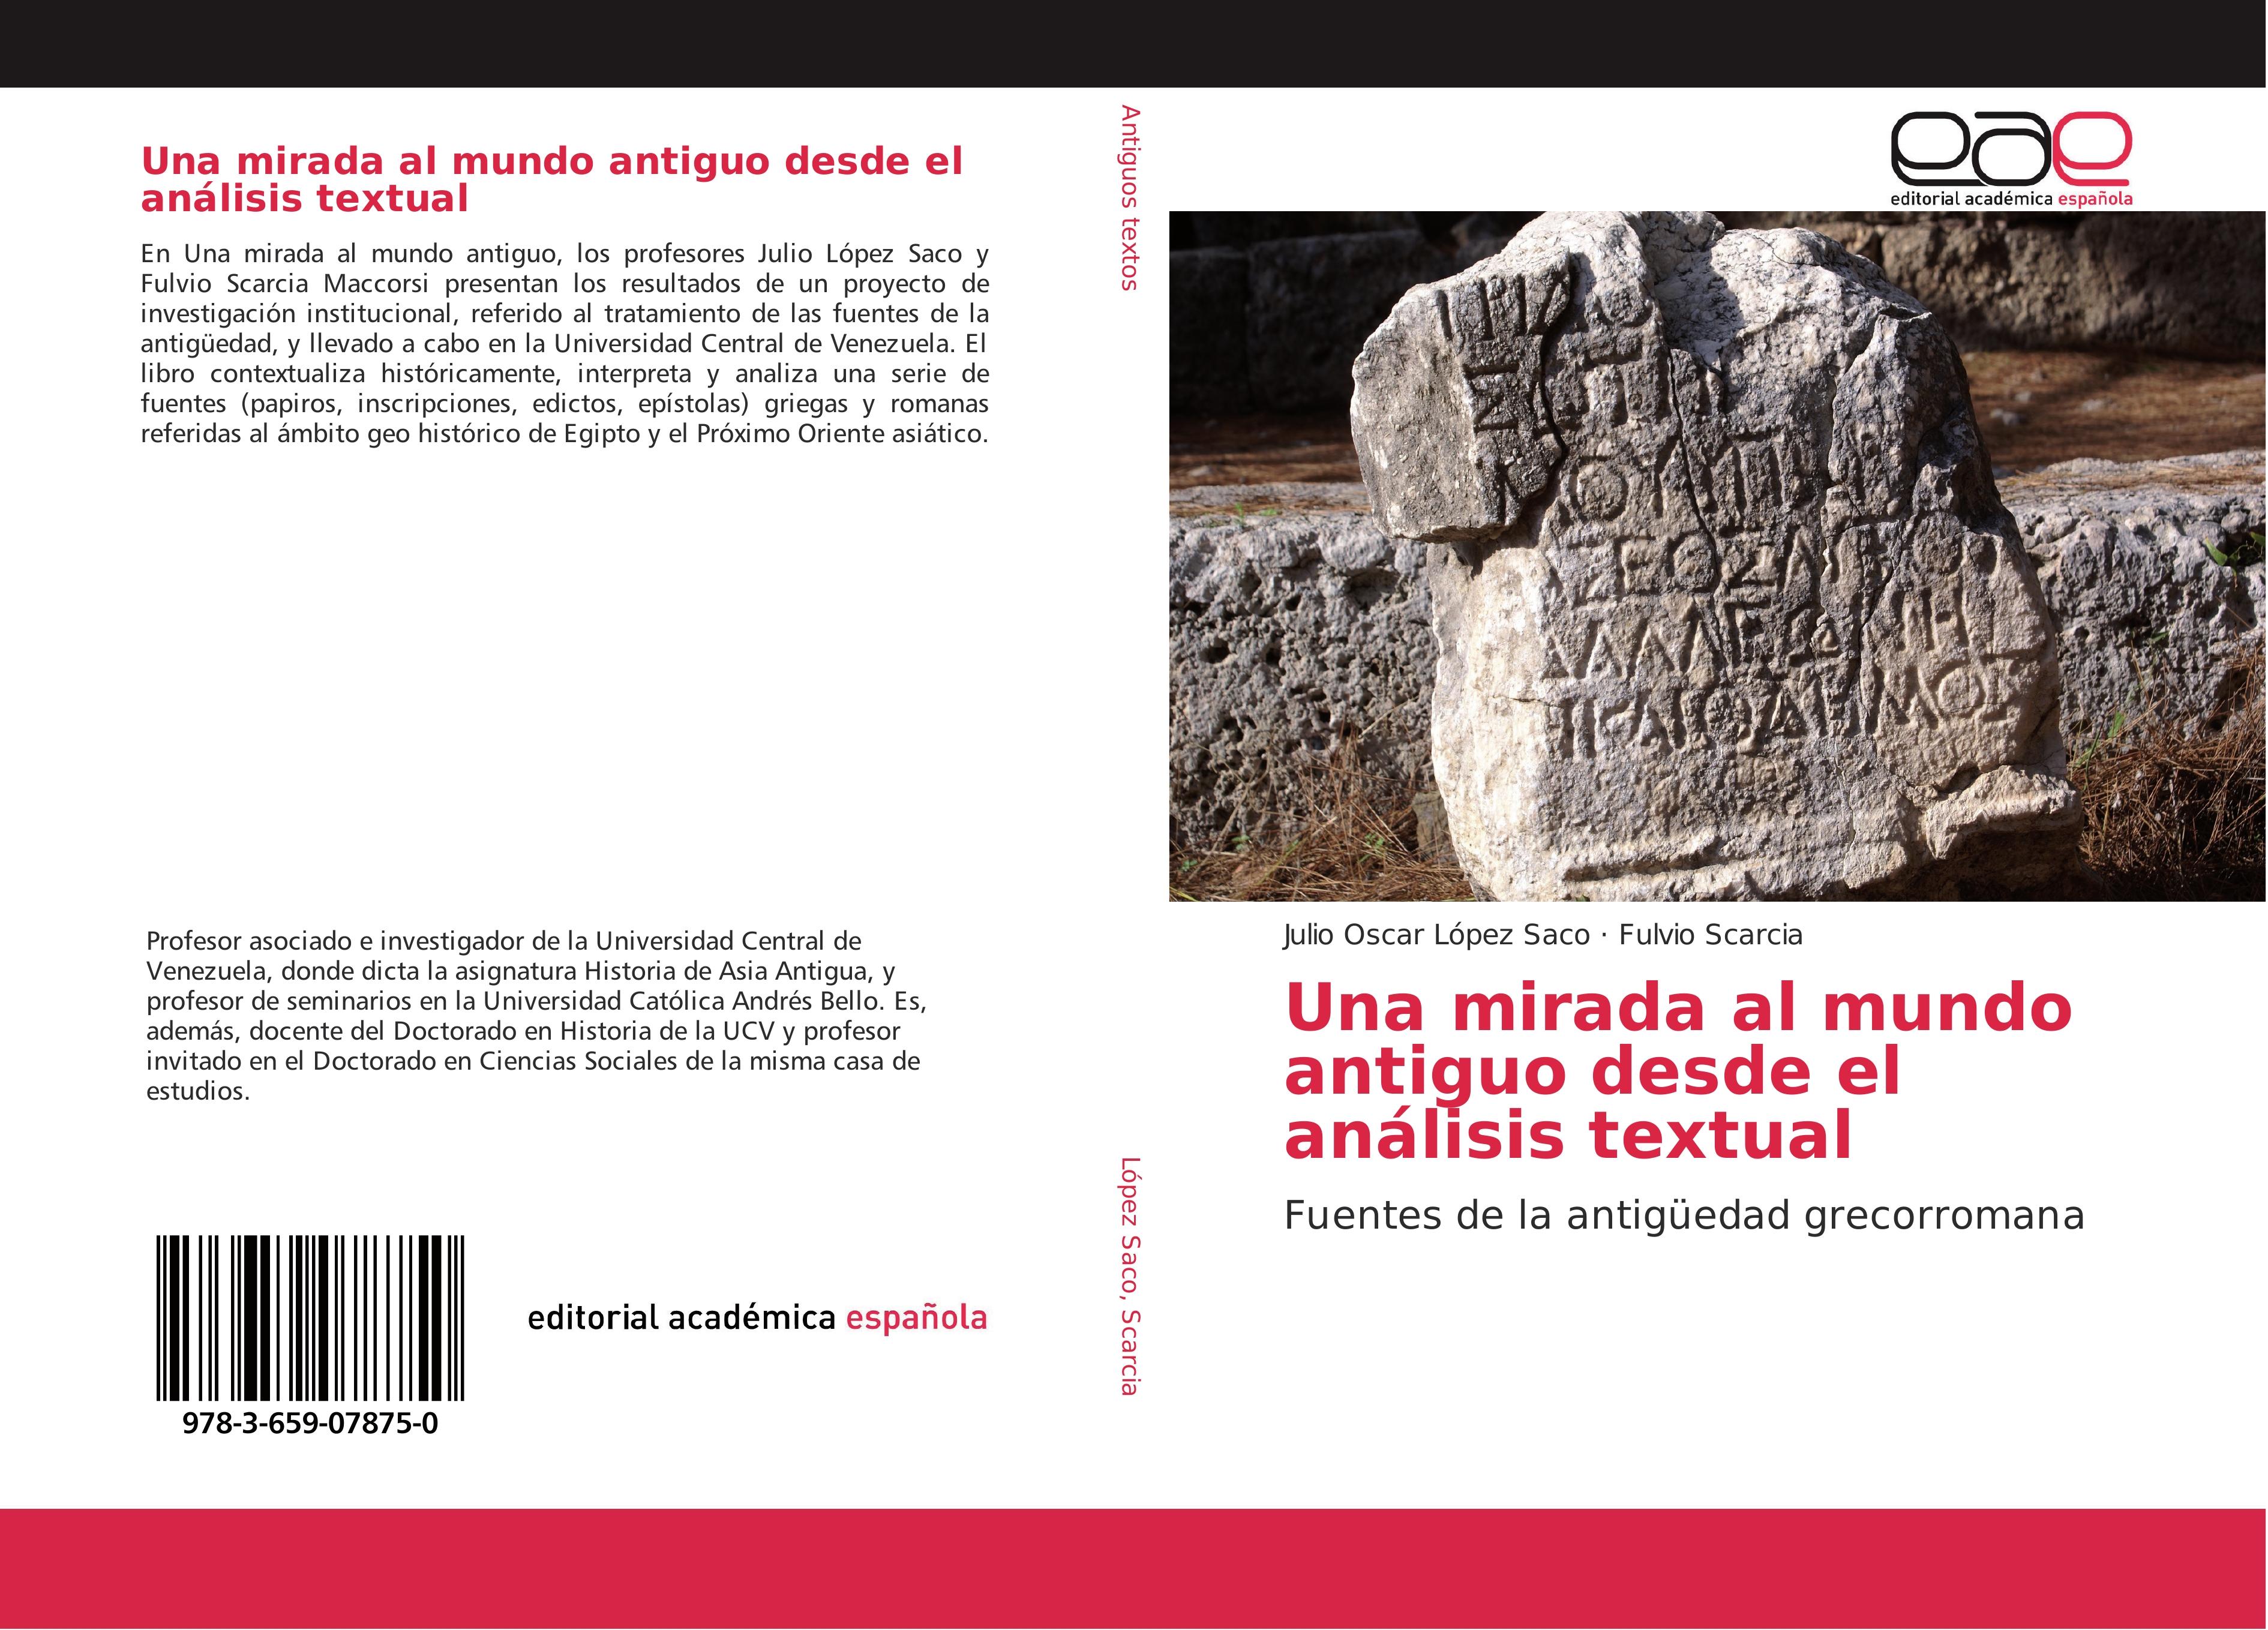 Una mirada al mundo antiguo desde el análisis textual - Julio Oscar López Saco Fulvio Scarcia